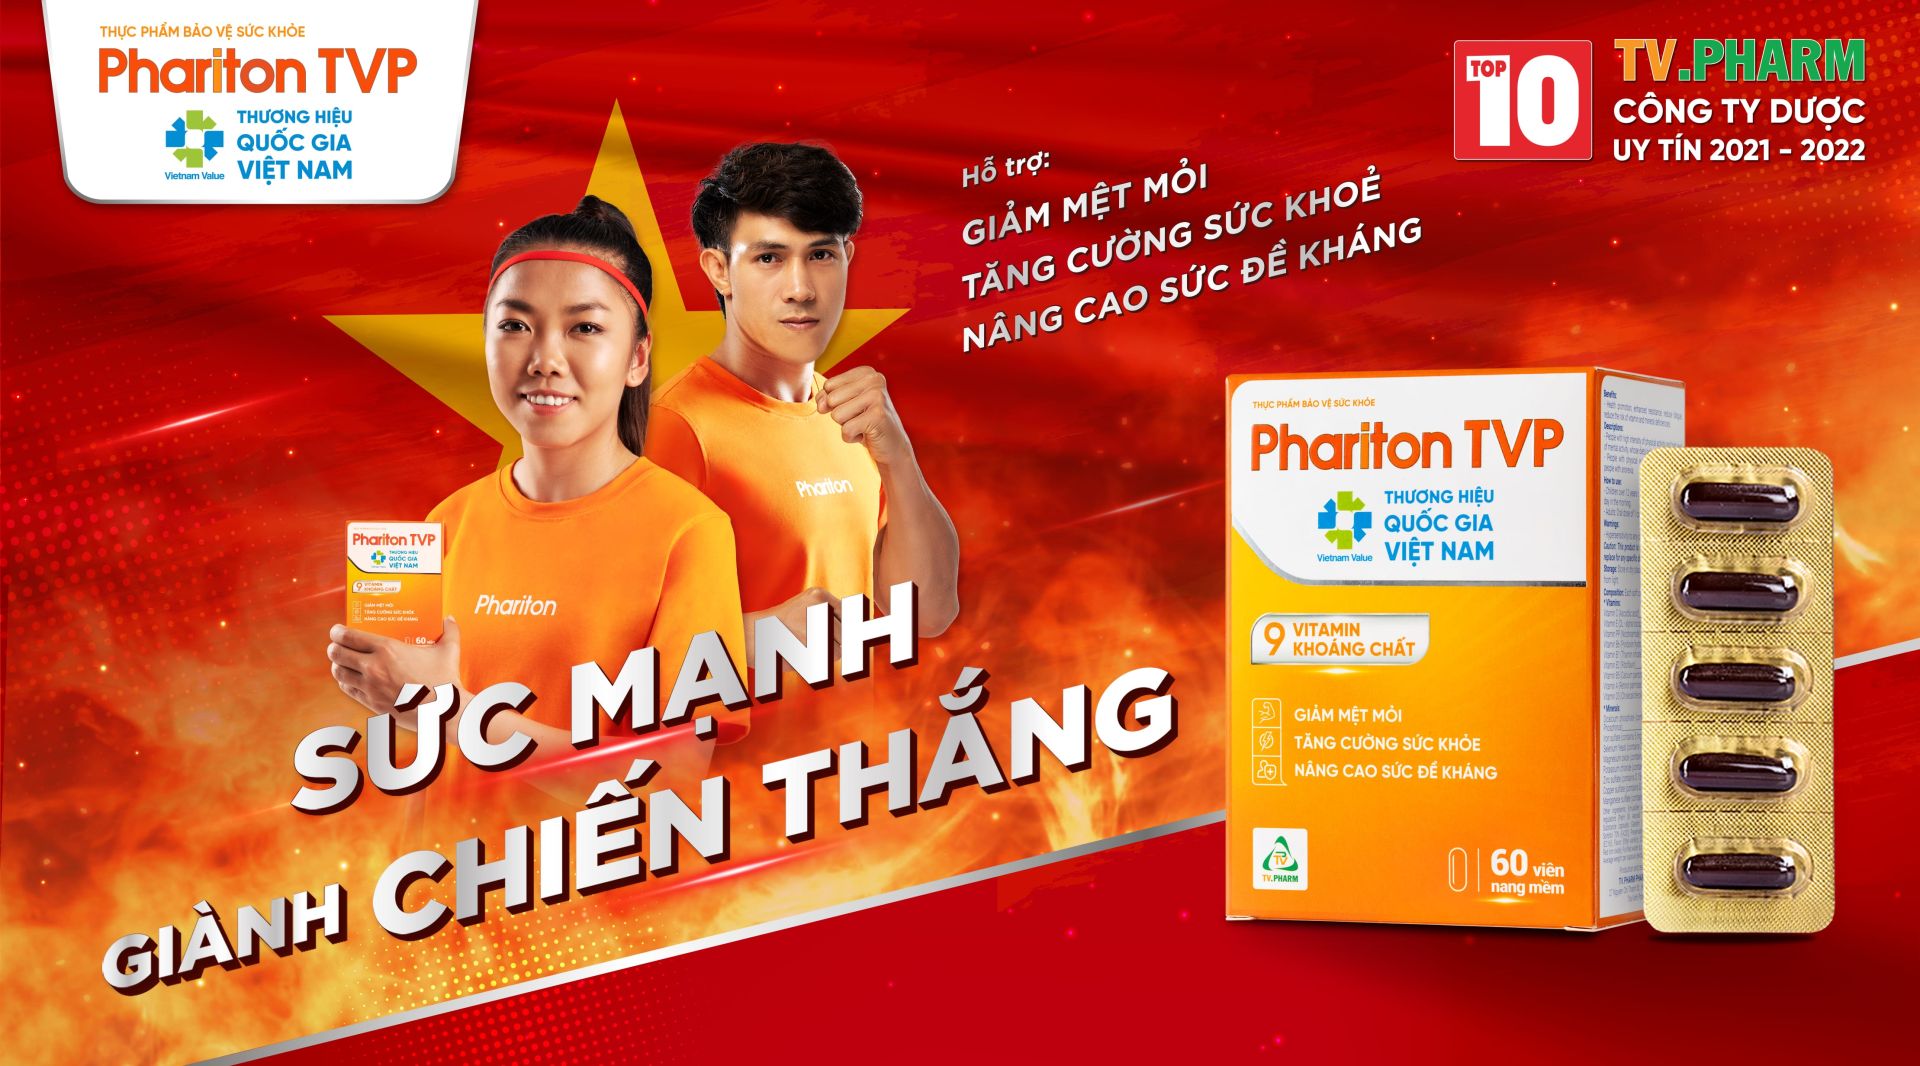 Nhận diện thương hiệu mới của Phariton TVP cùng đại sứ thương hiệu Huỳnh Như và Nguyễn Trần Duy Nhất